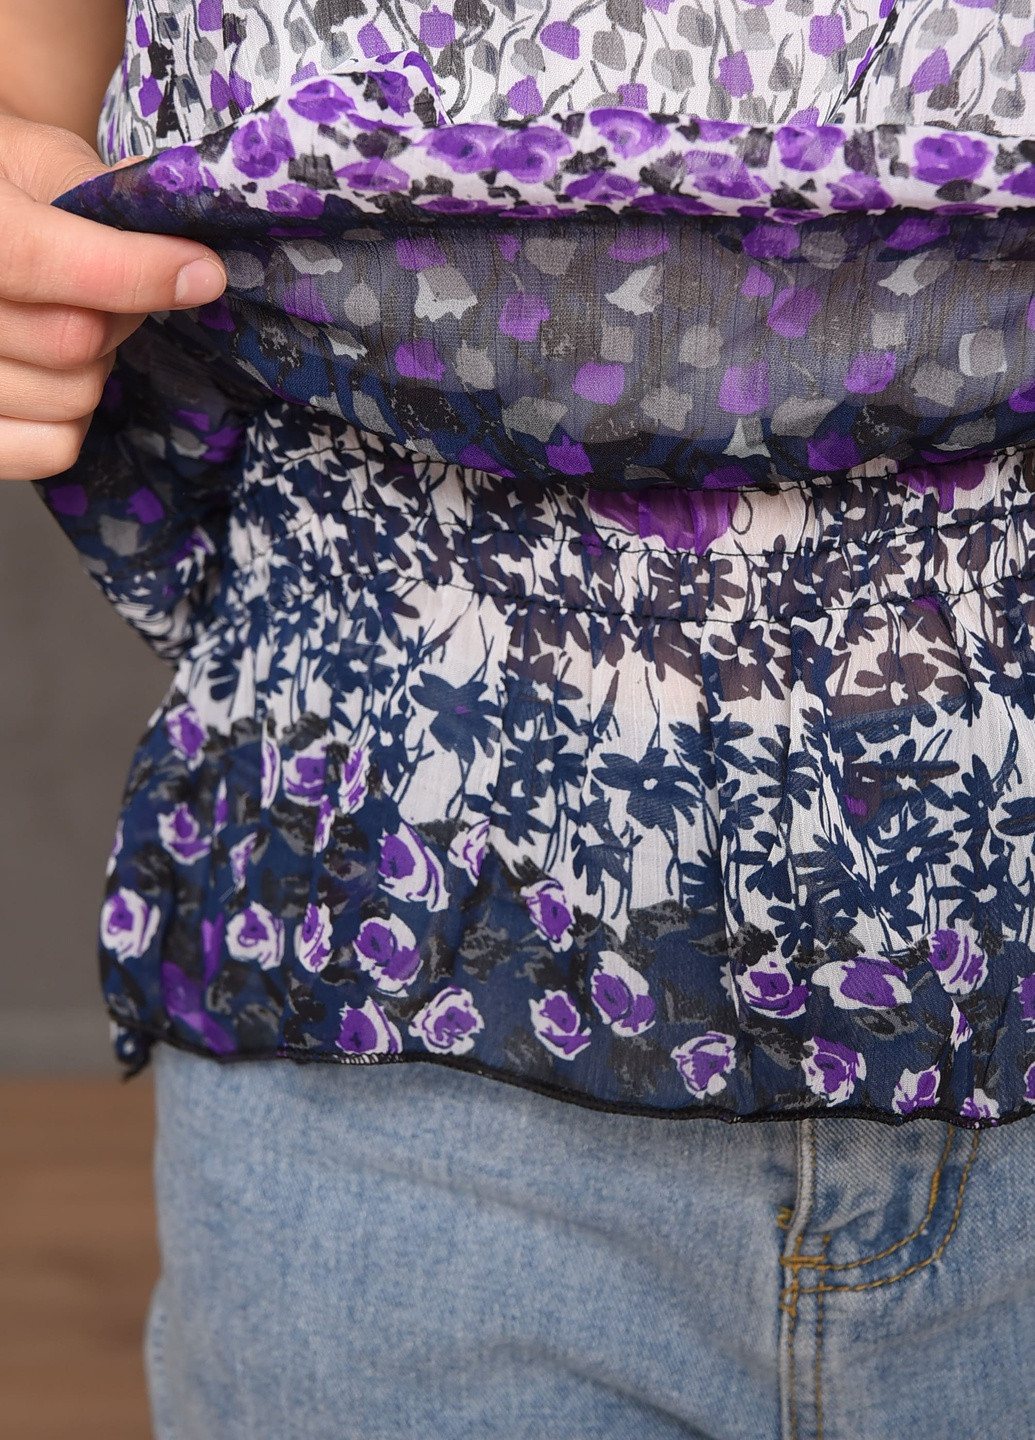 Фиолетовая летняя блузка женская фиолетового цвета размер 42-44 на запах Let's Shop